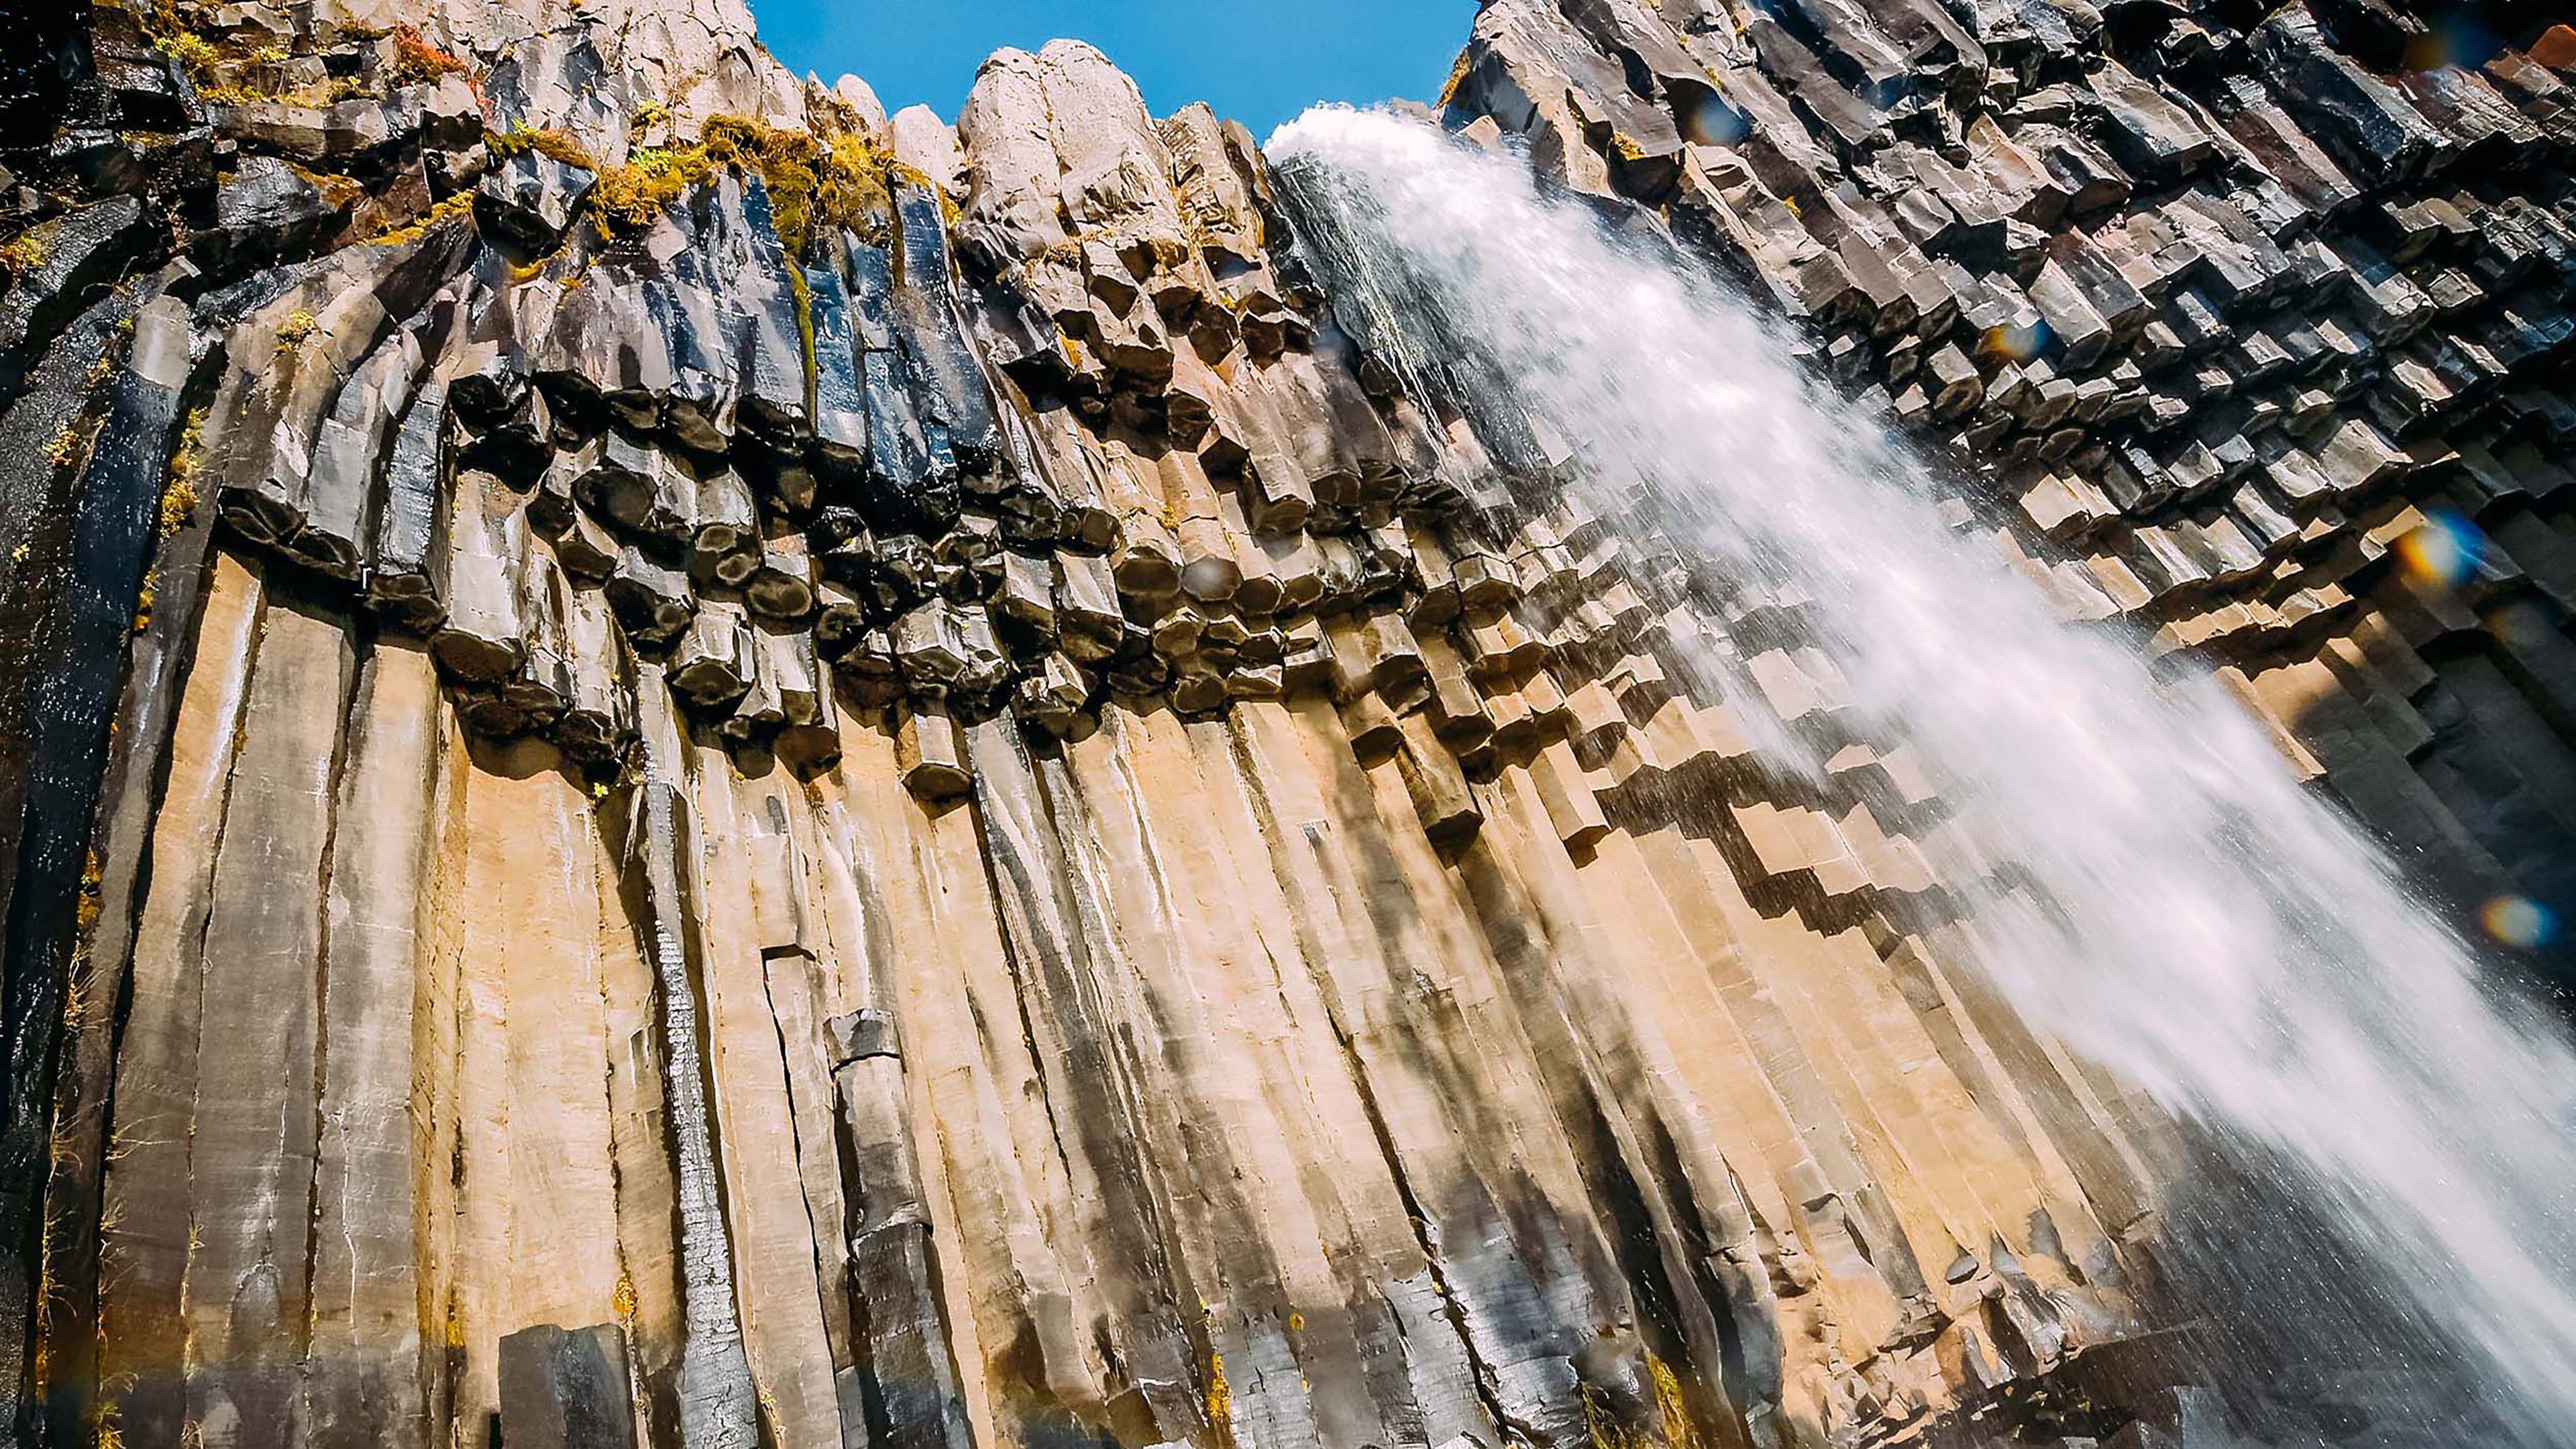 Wasserfall Svartifoss in Island von unten fotografiert, damit man die Basaltsäulen schön sieht